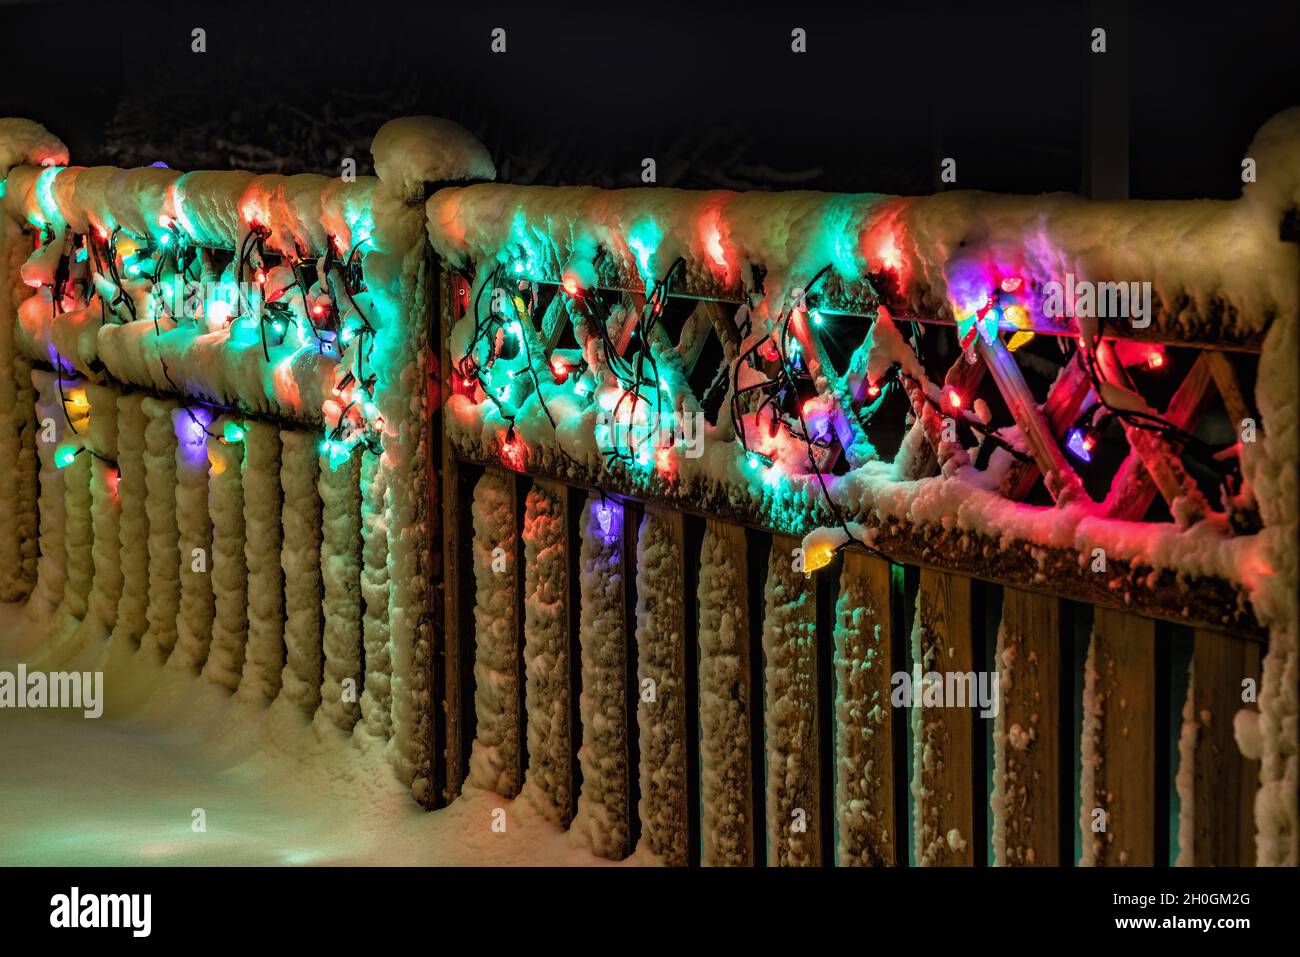 Weihnachtliche Lichtdekoration unter Schnee auf Holzzaun, bunte Lichter glühen, perspektivische Ansicht Stockfoto